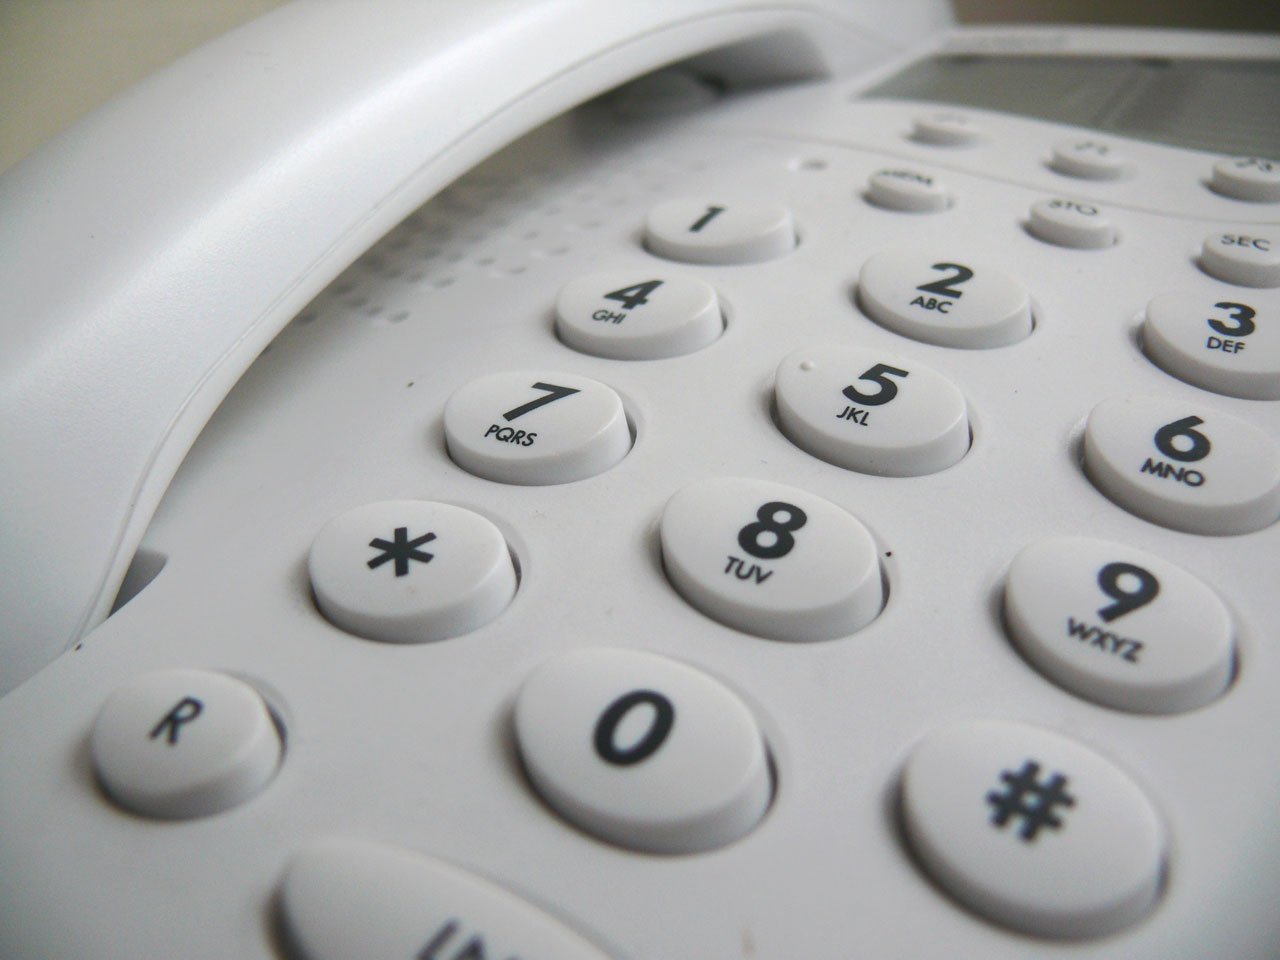 Le phoning est une technique de marketing direct. Callcentertunisie vous livre les astuces pour augmenter votre portefeuille clients.